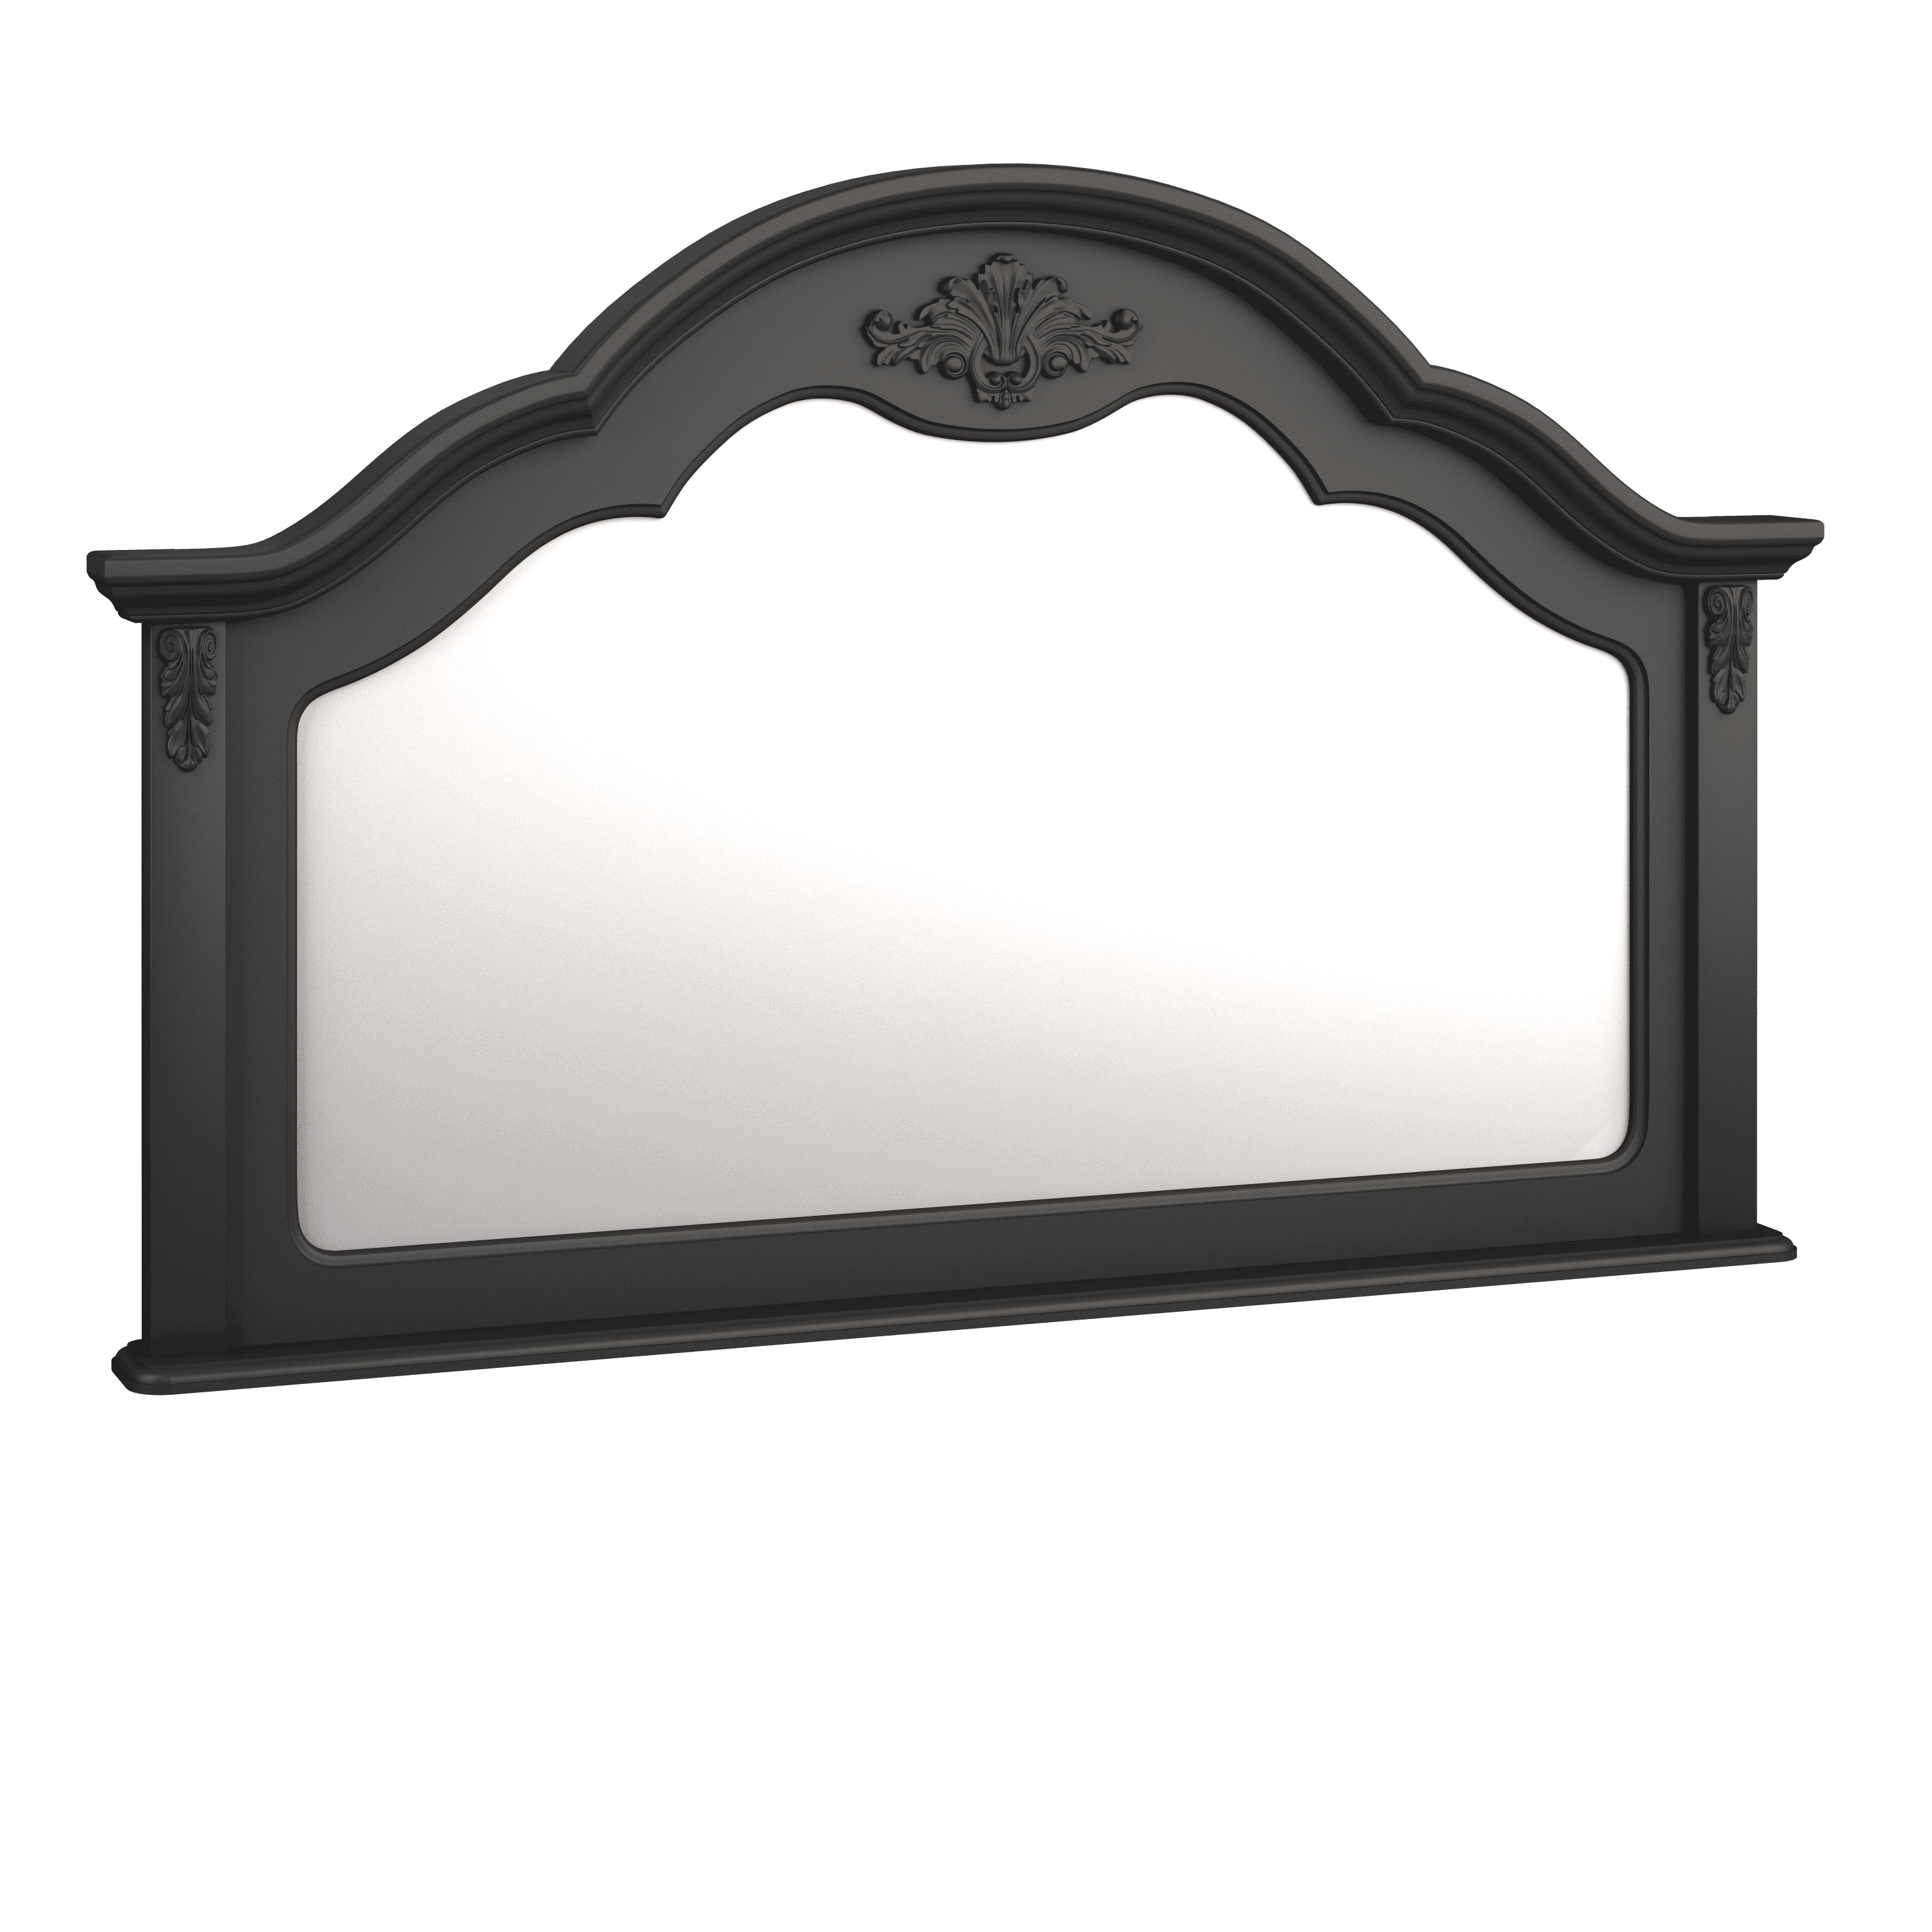 Зеркало к комоду Aletan Provence, цвет: черный, размер 138х8х85 см (B104BL)B104BL